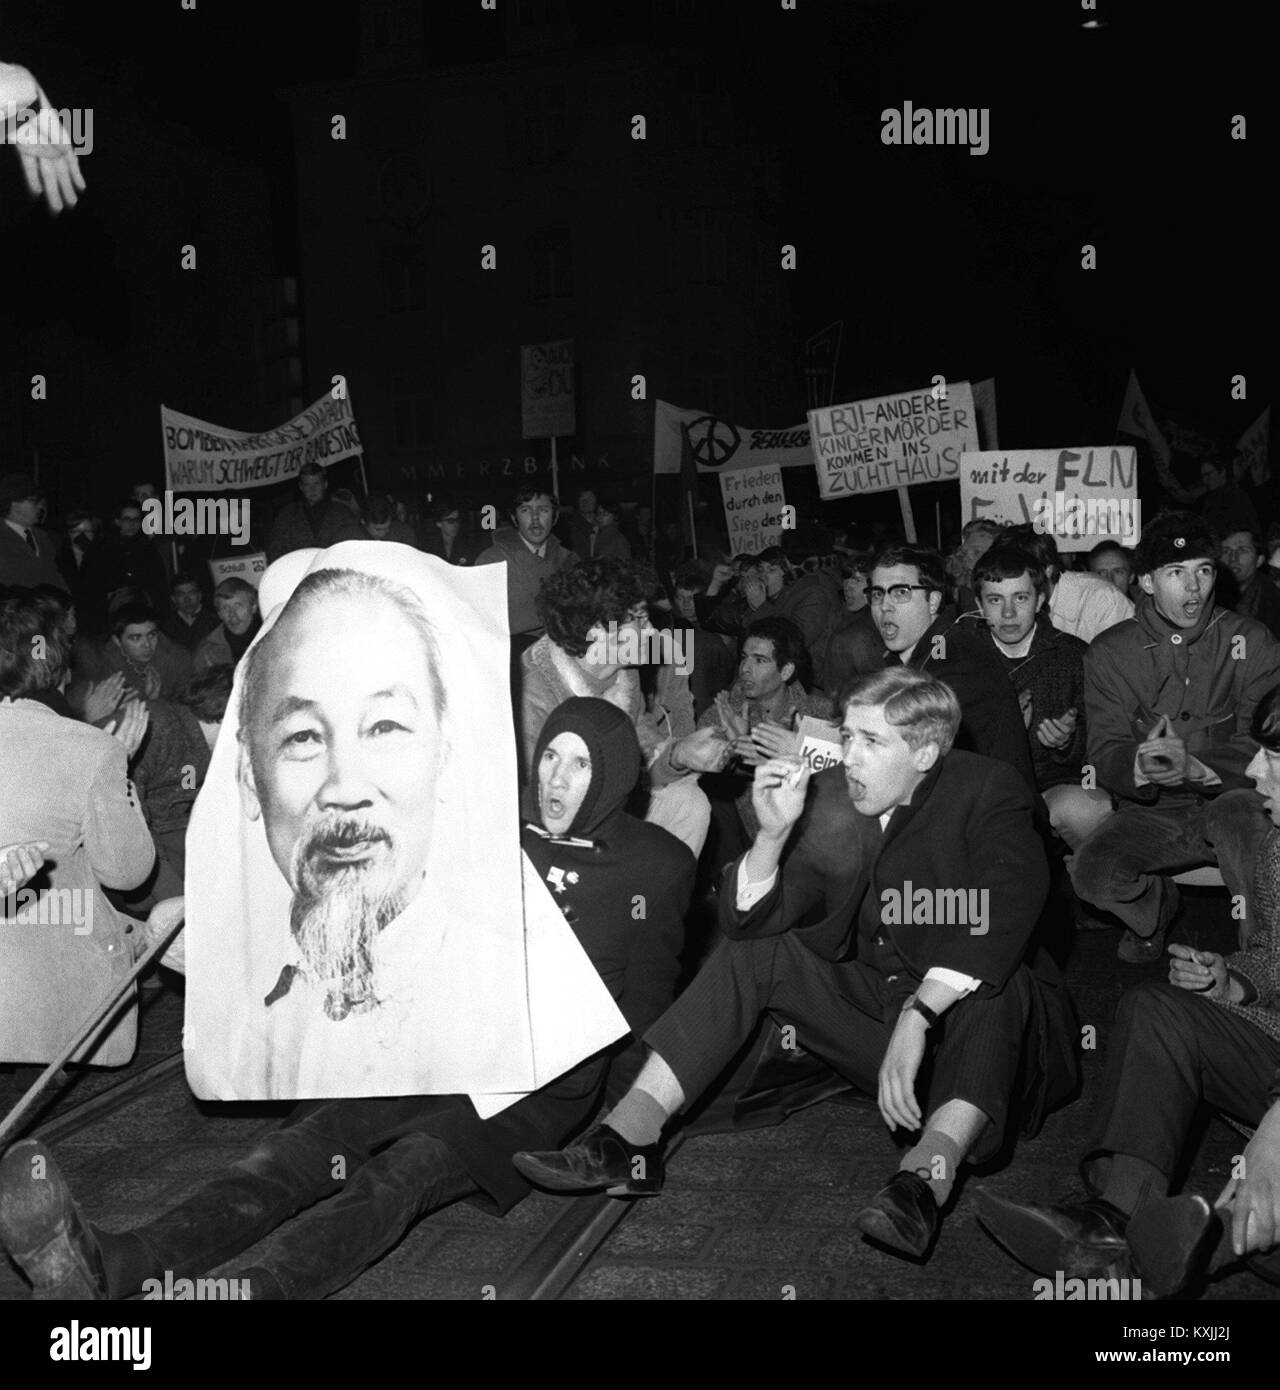 Les participants d'un Vietnam manifestation le 29 février 1968 à Francfort - Allemagne - bloquer le trafic après avoir appris que les élèves porte-parole Rudi Dutschke a été arrêté à son arrivée à Francfort. Dans le monde d'utilisation | Banque D'Images